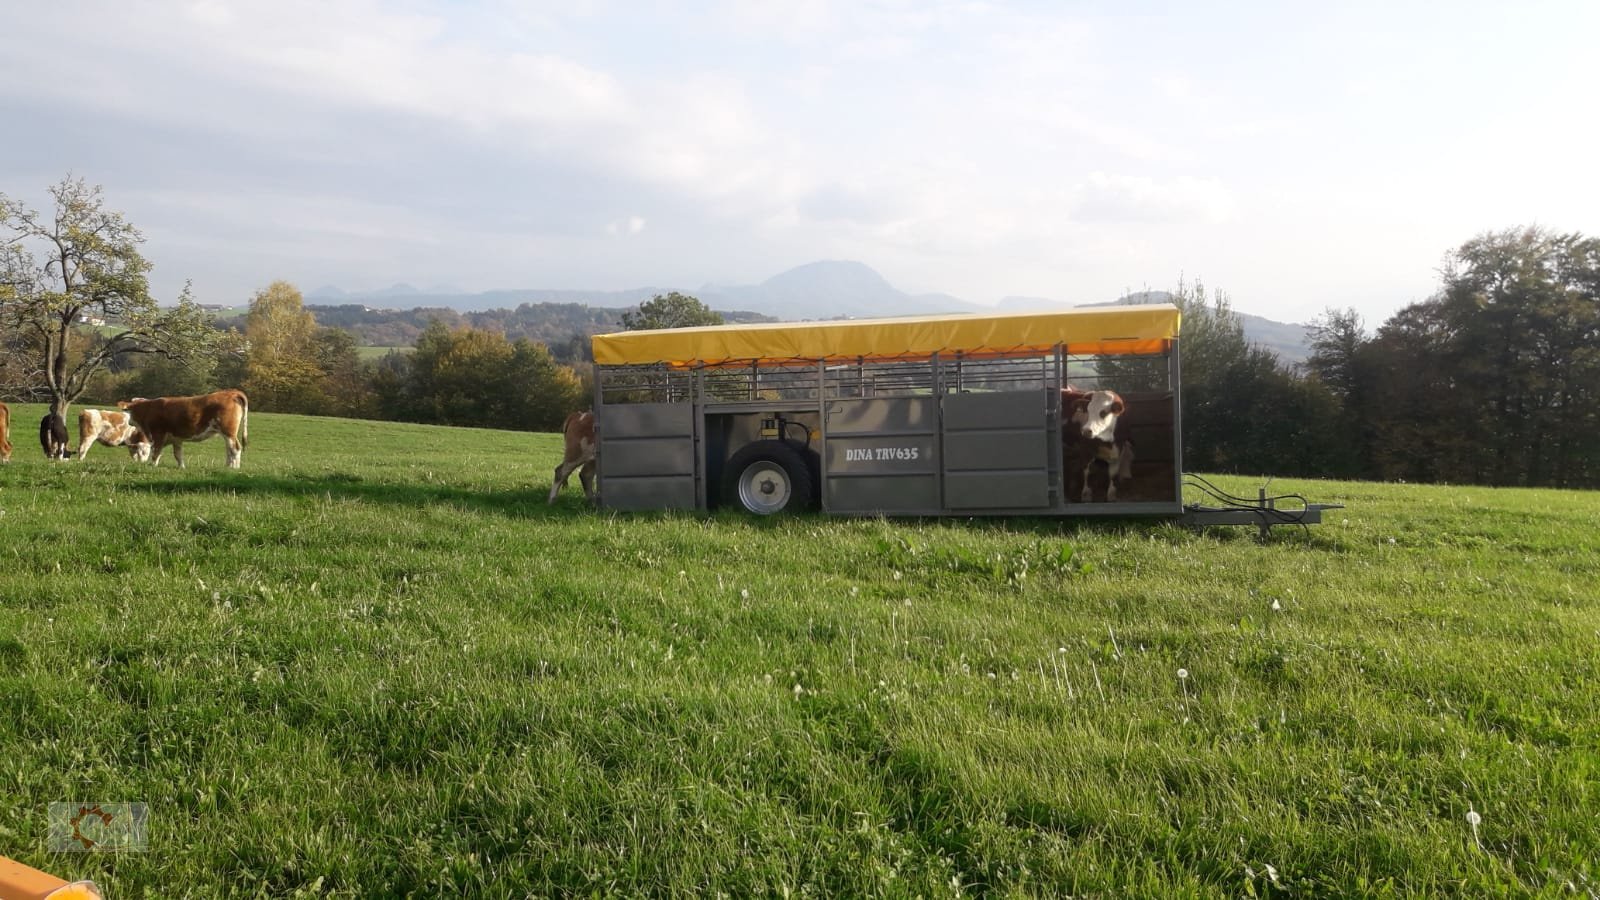 Viehanhänger des Typs Dinapolis TRV Tiertransportwagen Druckluft Hydraulisch absenkbar, Neumaschine in Tiefenbach (Bild 3)